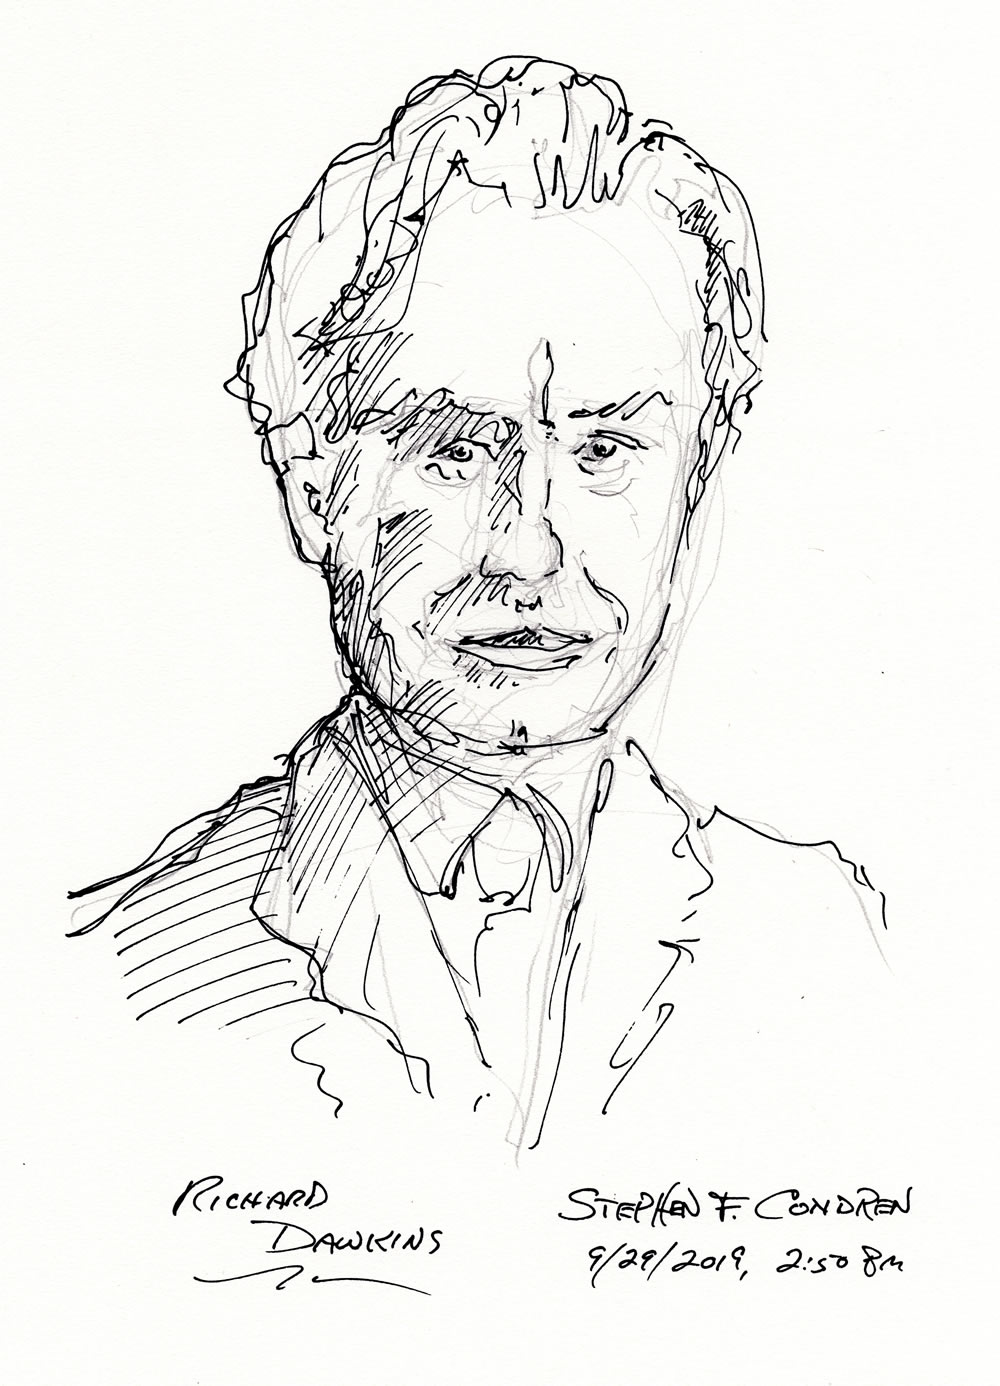 Richard Dawkins #409Z pen & ink drawing by artist Stephen F. Condren.